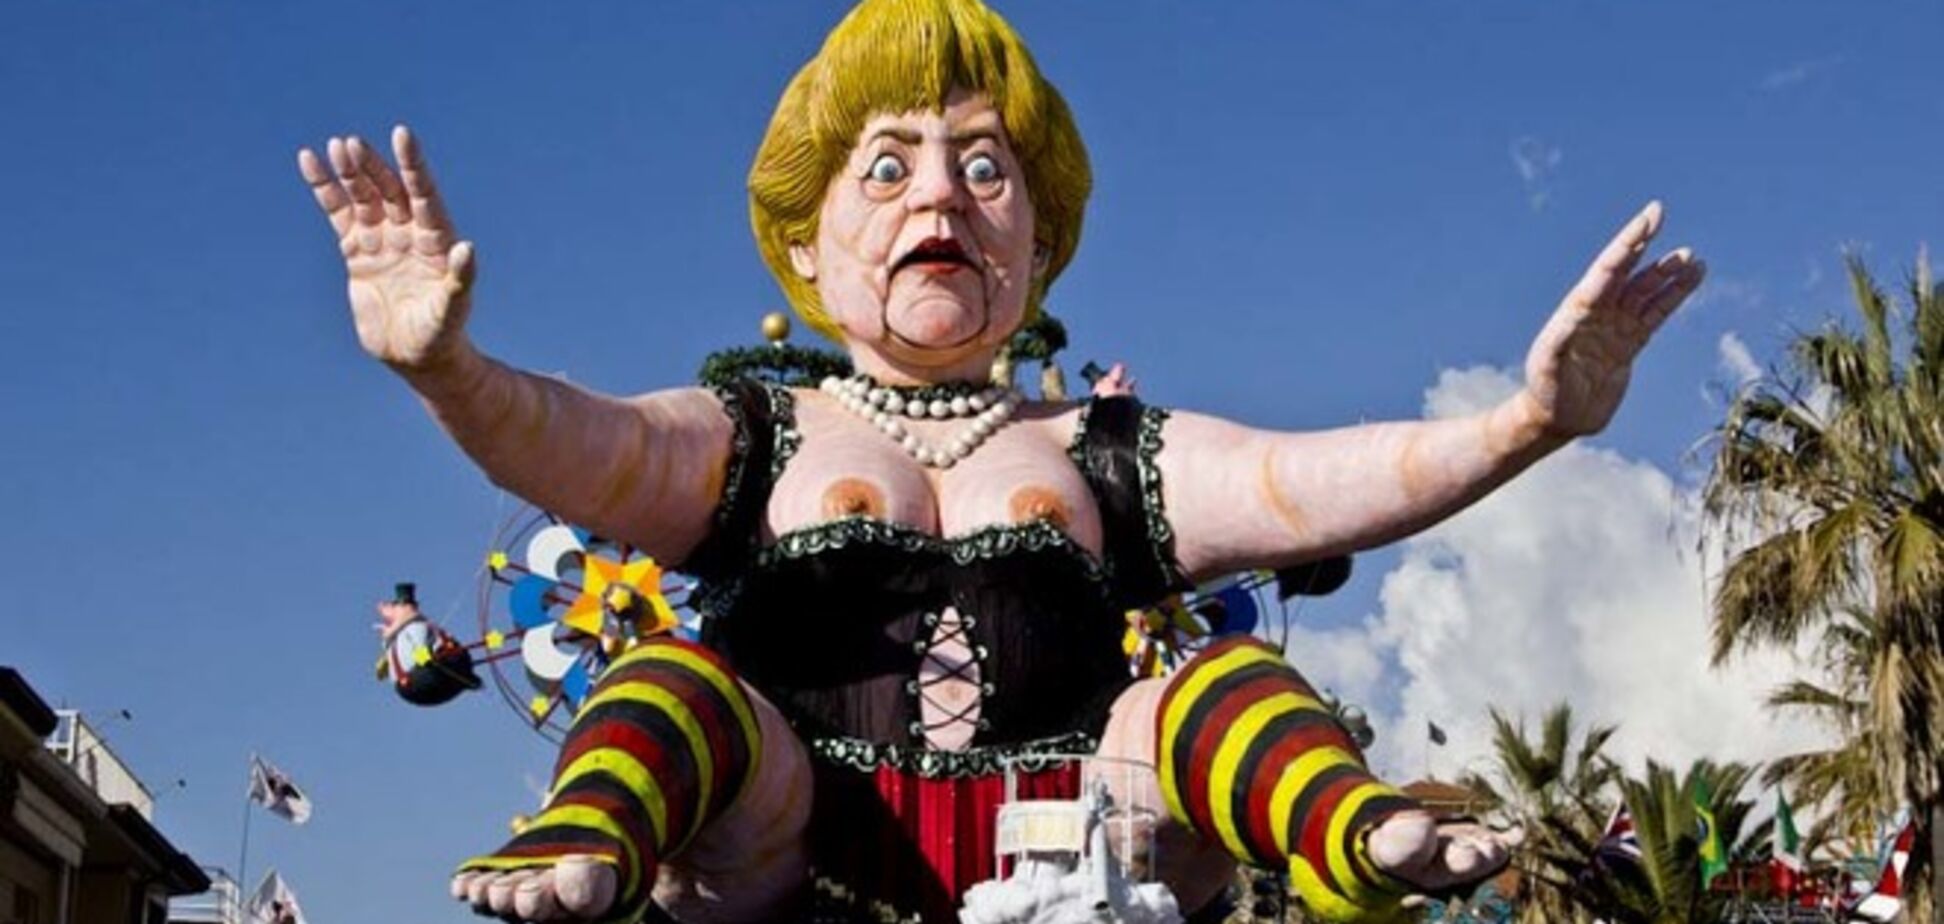 Политическая сатира по-итальянски: карнавал в Виареджо порадовал веселыми куклами мировых лидеров 